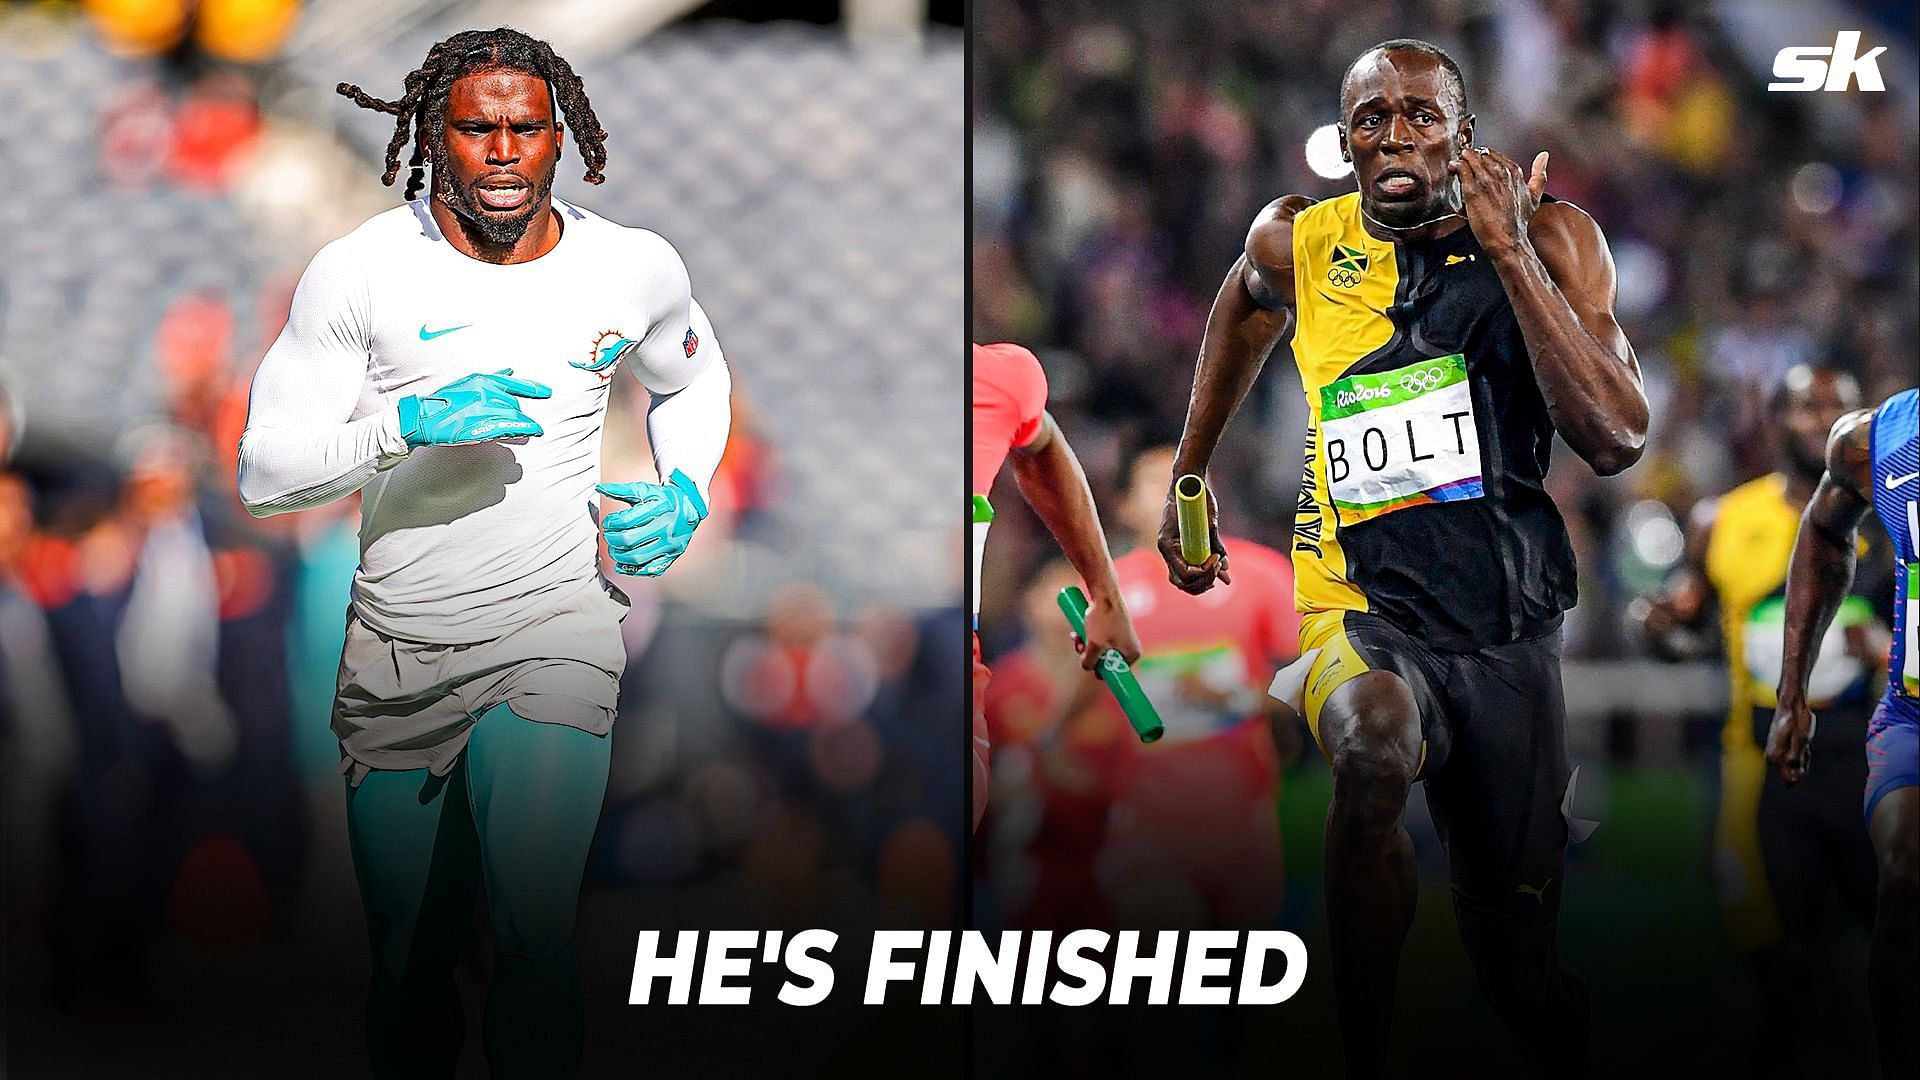 How fast can Usain Bolt run the 40 yard dash?